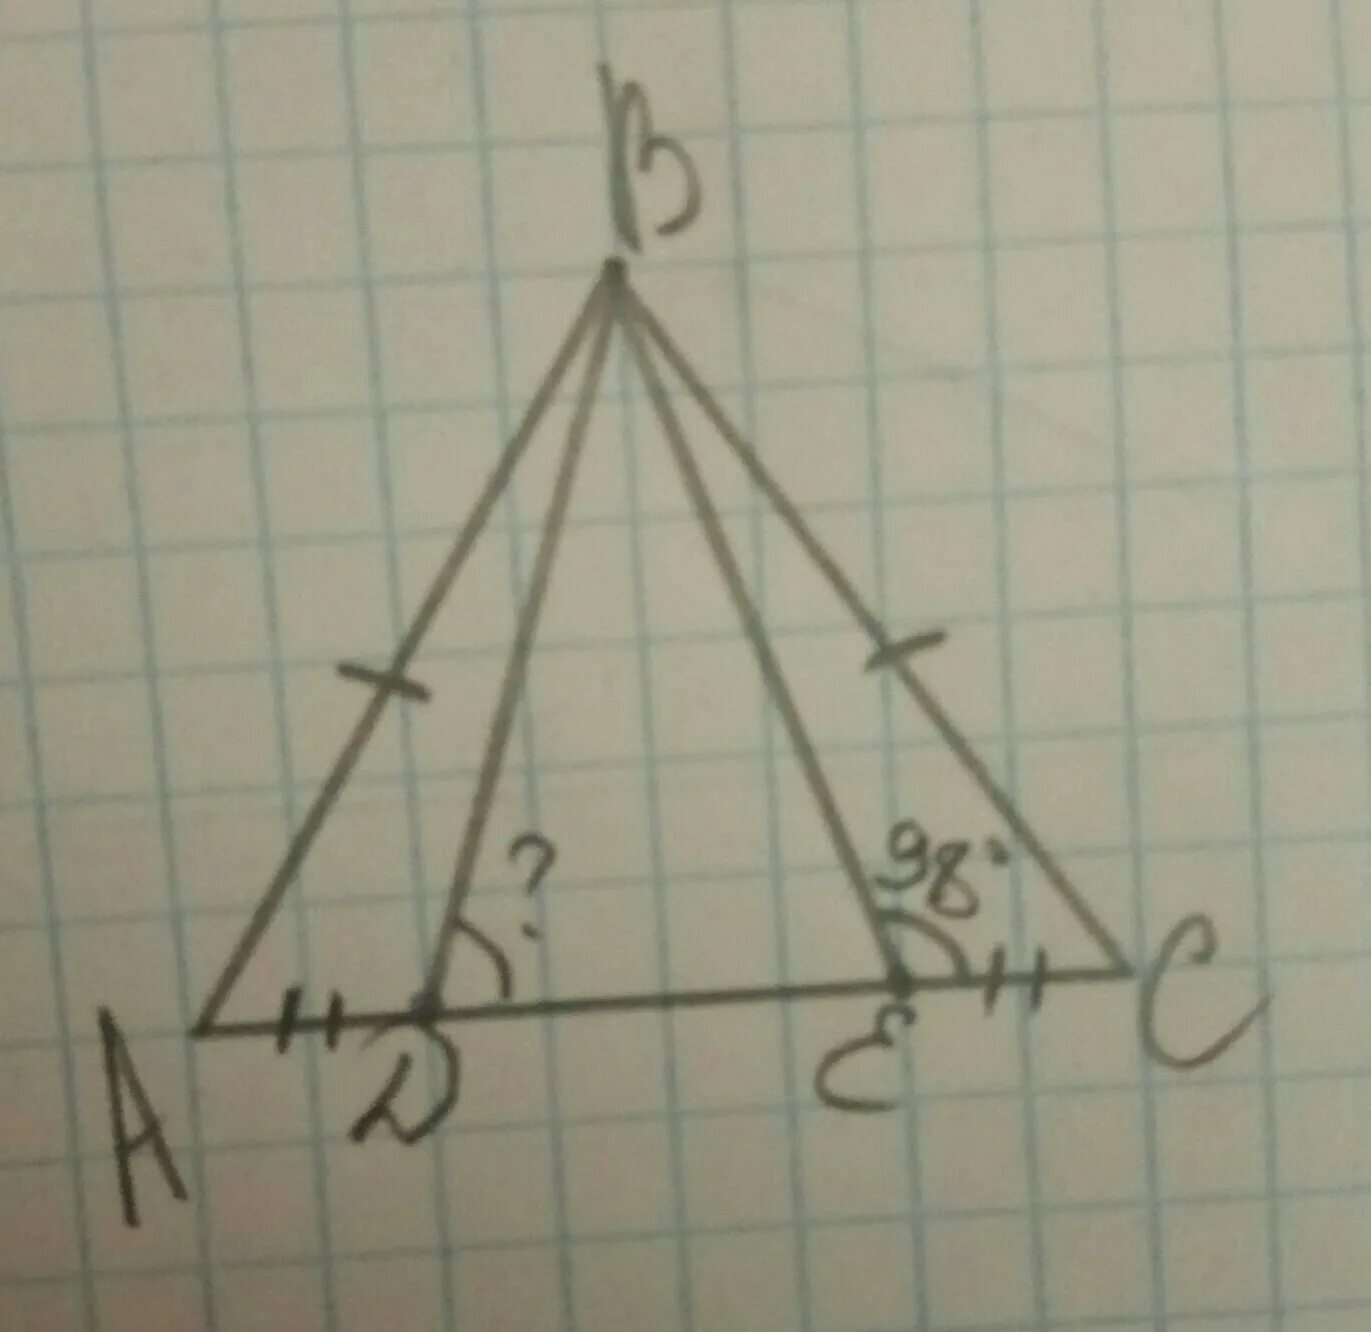 Abc равнобедренный ab bc a c. Треугольник ABC равнобедренный ab=. Треугольник АВС равнобедренный , ab BC. Треуг ABC-равнобедренный ab=BC. Боковые стороны в треугольнике АВС.